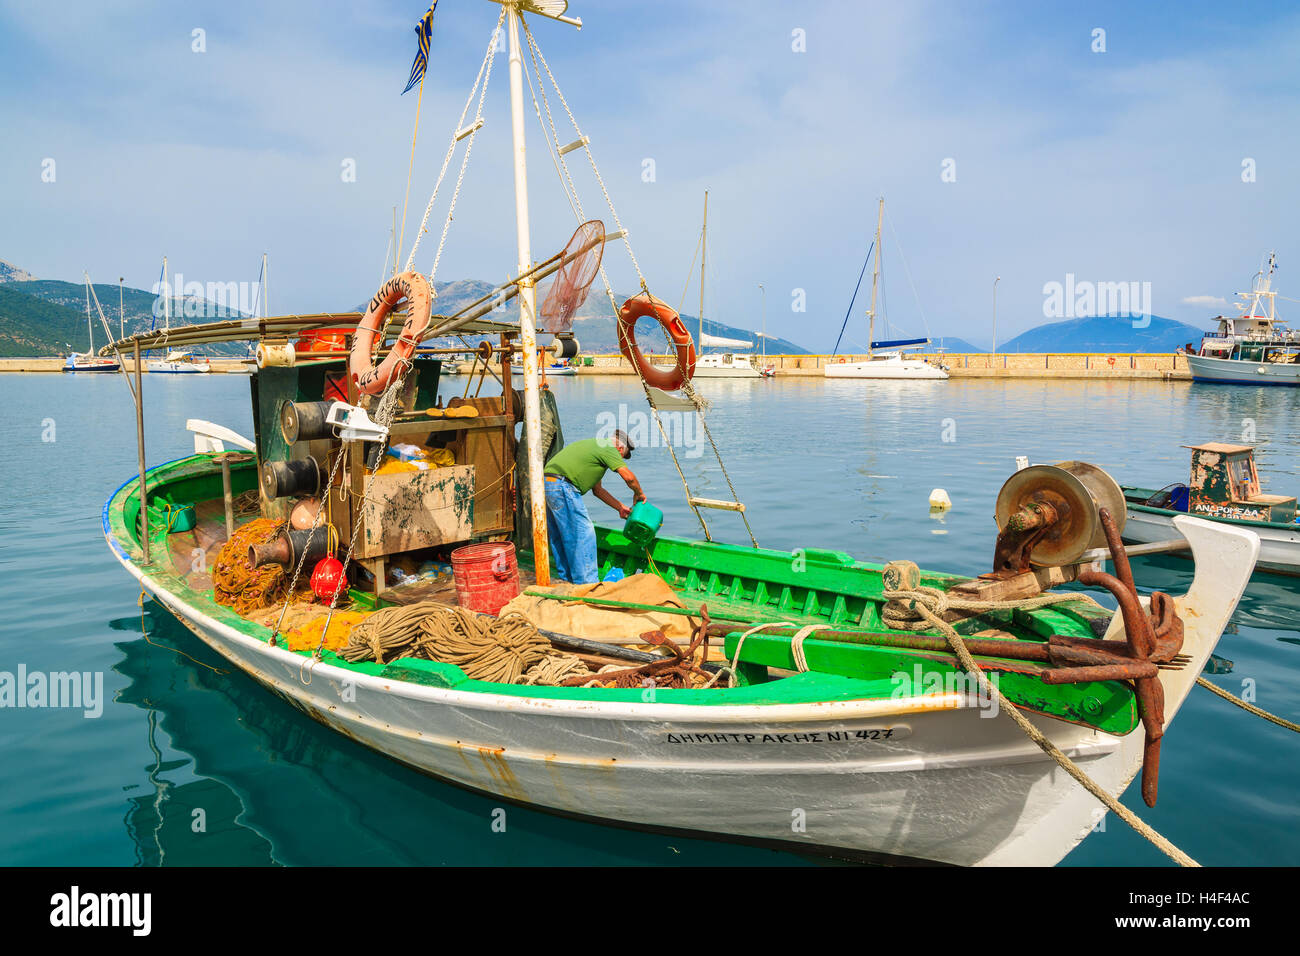 SAMI PORT, l'isola di Cefalonia, Grecia - Sep 20, 2014: pescatore pulisce greco tradizionale barca da pesca nel porto di Sami village. Barche colorate sono simbolo di isole greche. Foto Stock